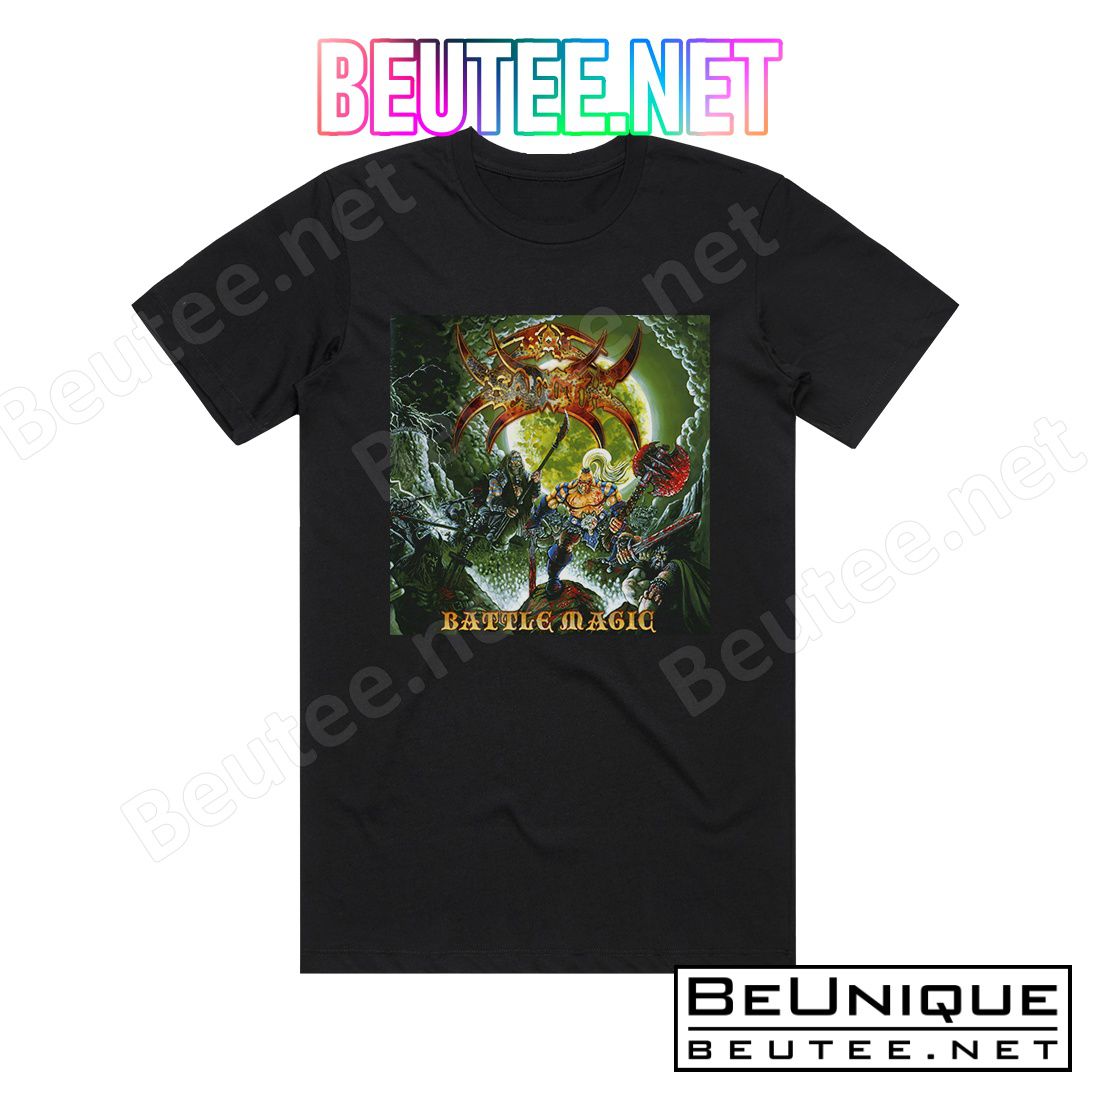 Bal-Sagoth Battle Magic Album Cover T-Shirt